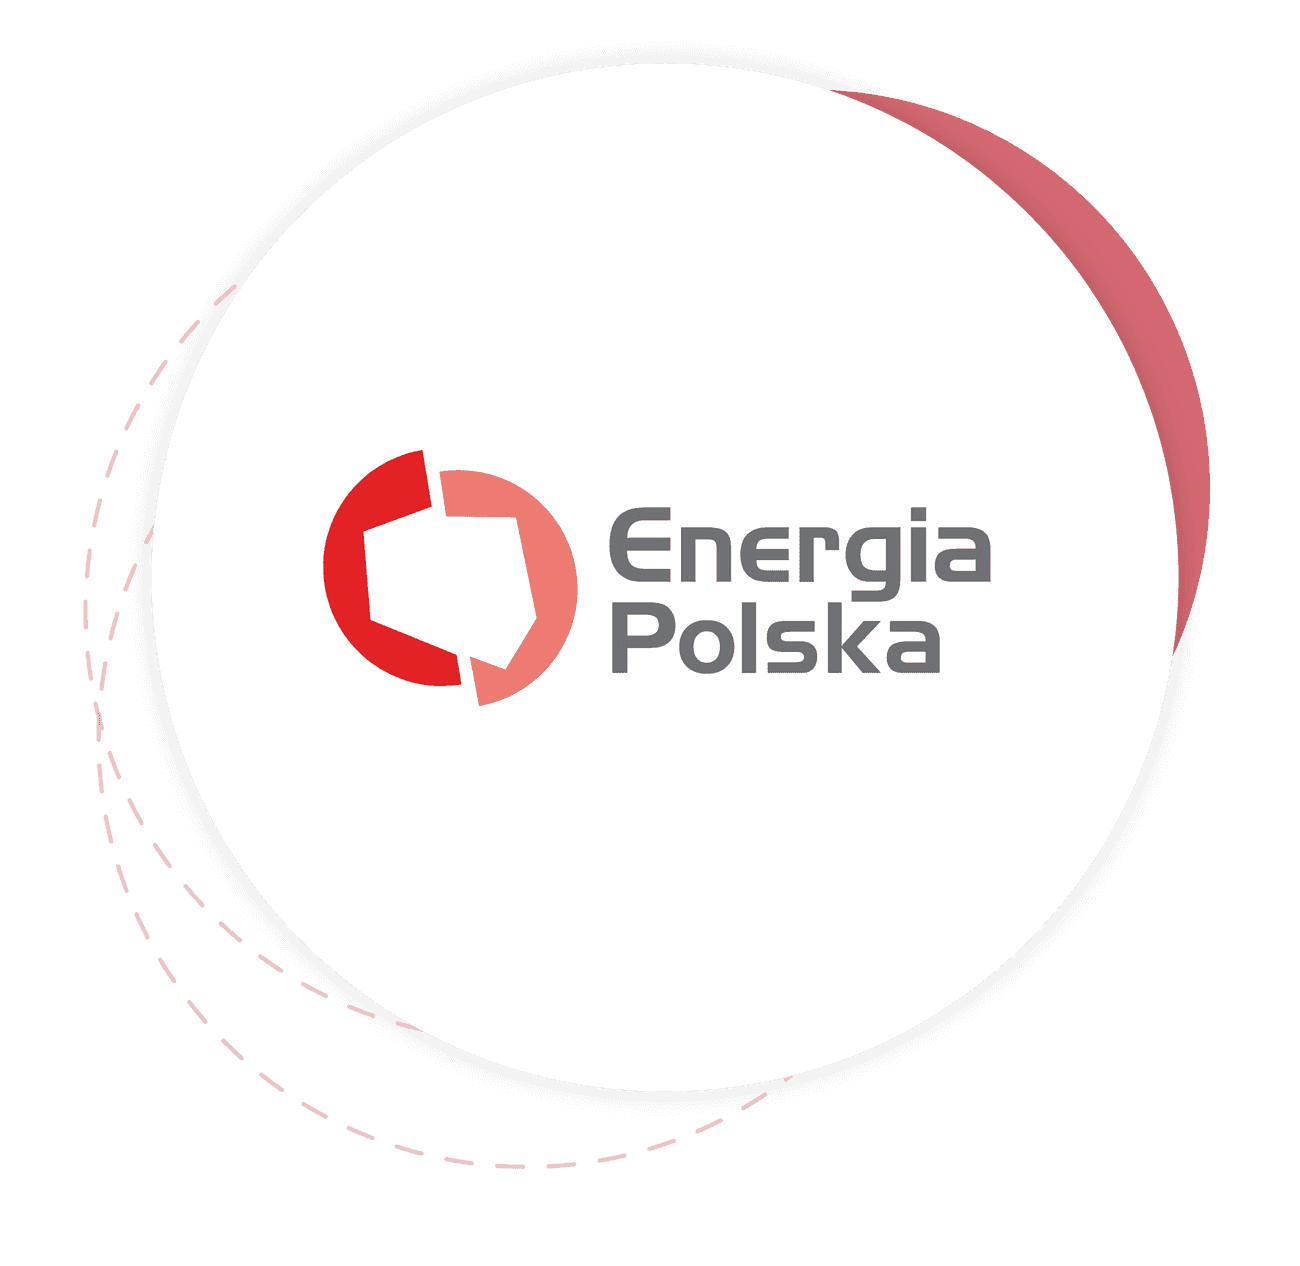 Über Energia Polska